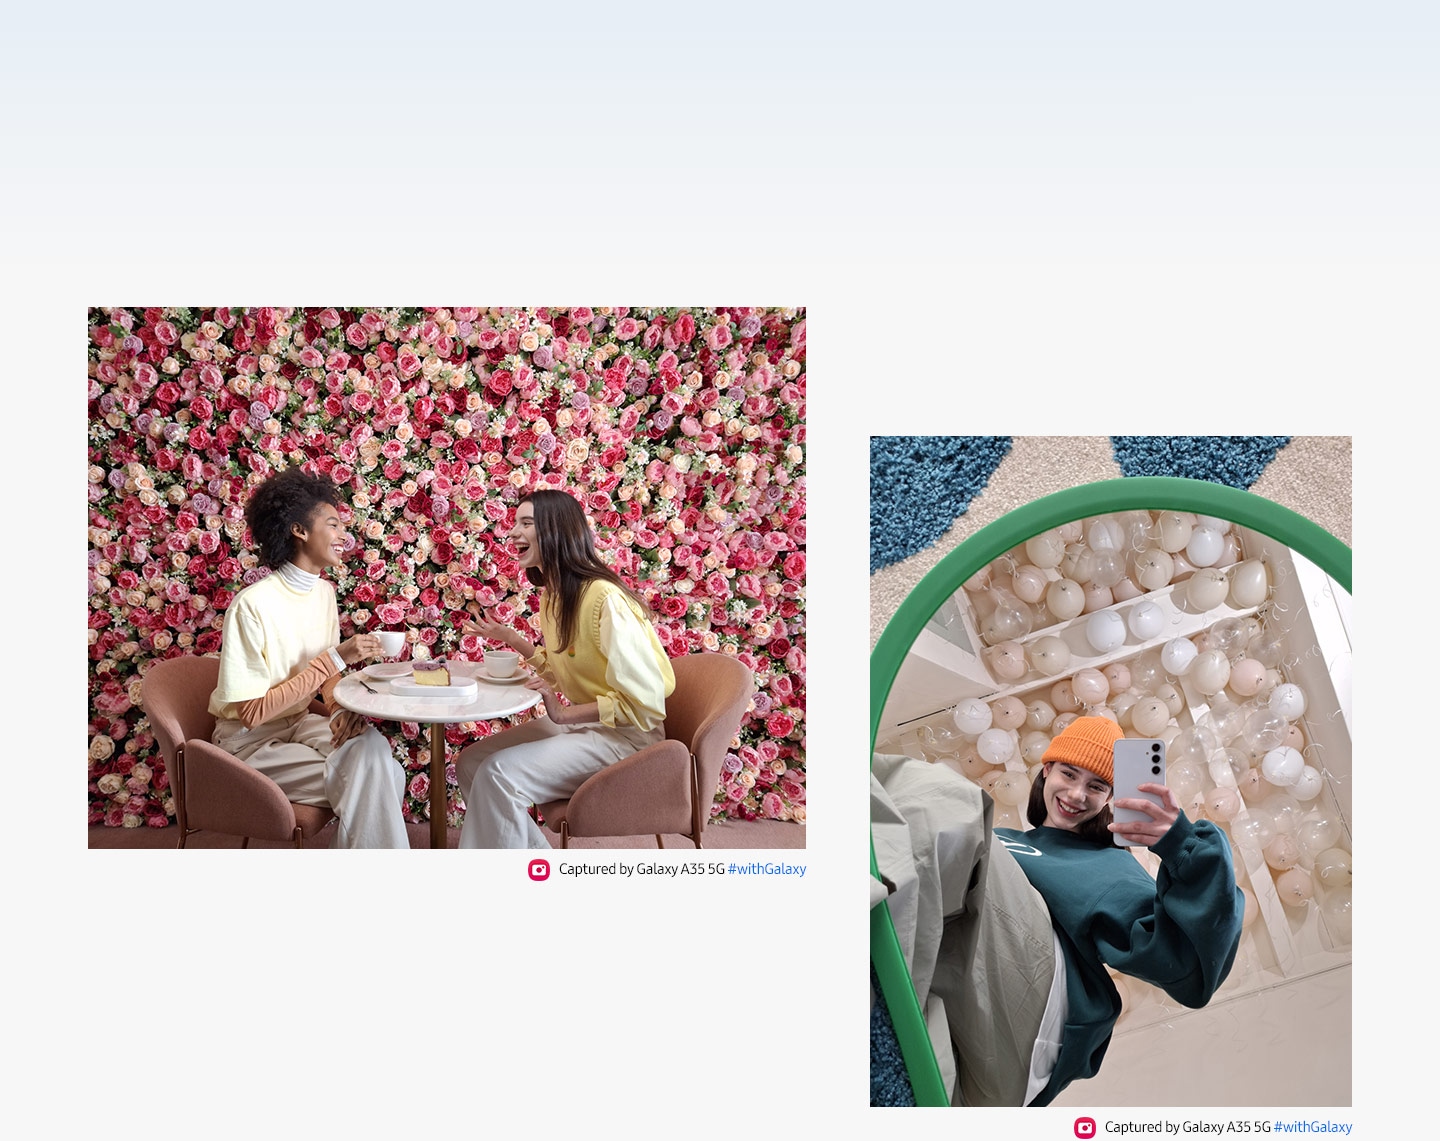 Dva lidé se zapojili do rozhovoru u stolu se zářivě růžovým květinovým pozadím na stěně. A zrcadlové selfie člověka s pozadím bílých balónků. Text zní Zachyceno Galaxy A35 5G #withGalaxy.